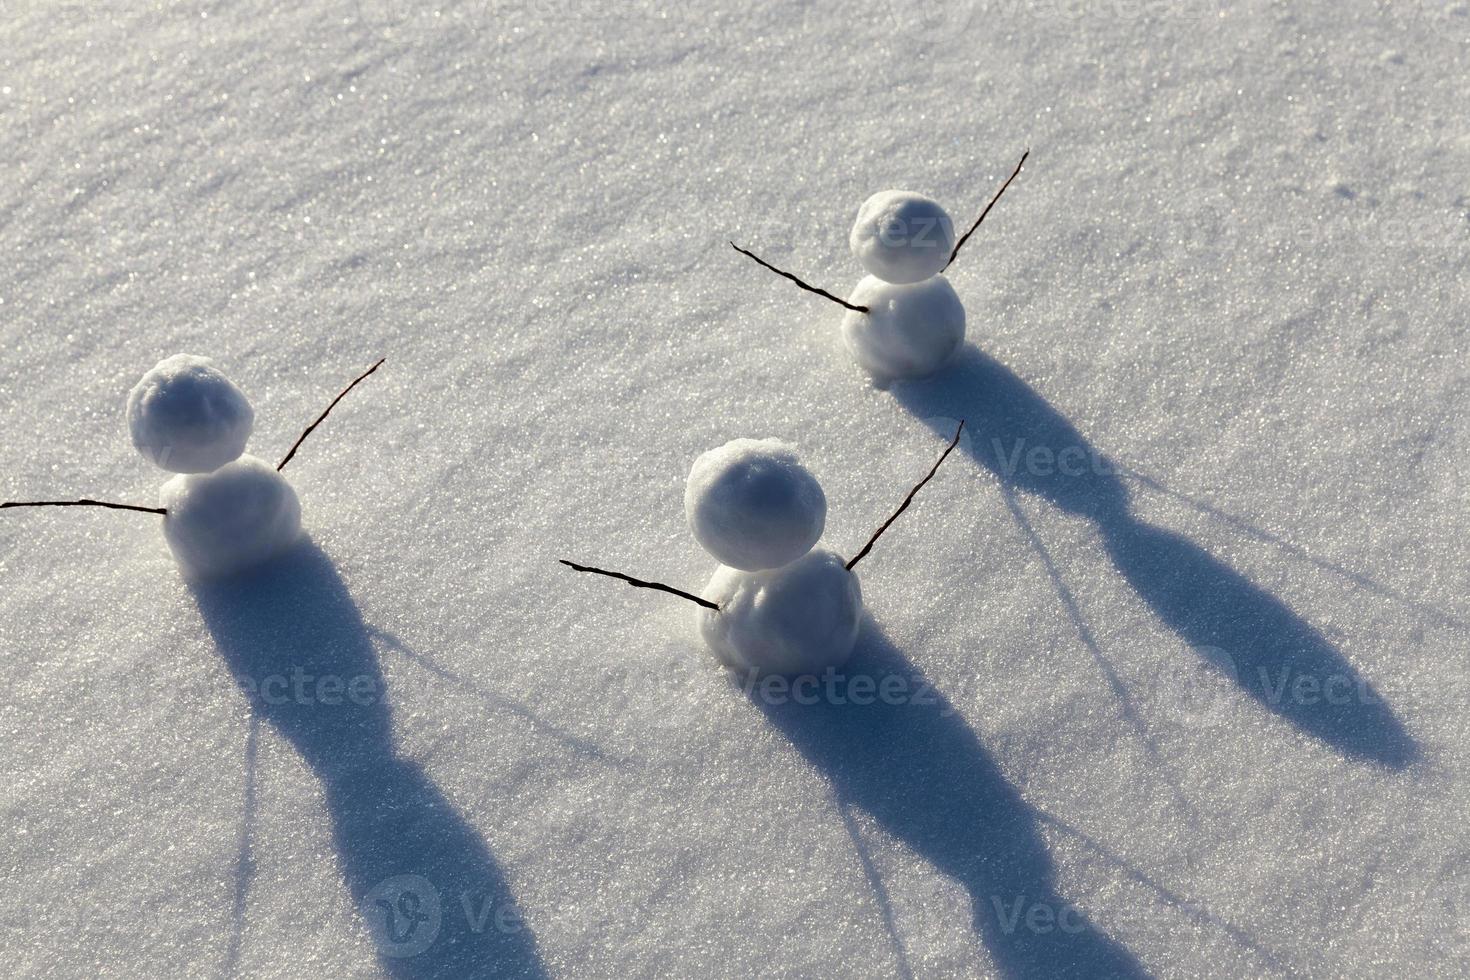 jeux dans la neige avec création de plusieurs bonhommes de neige photo